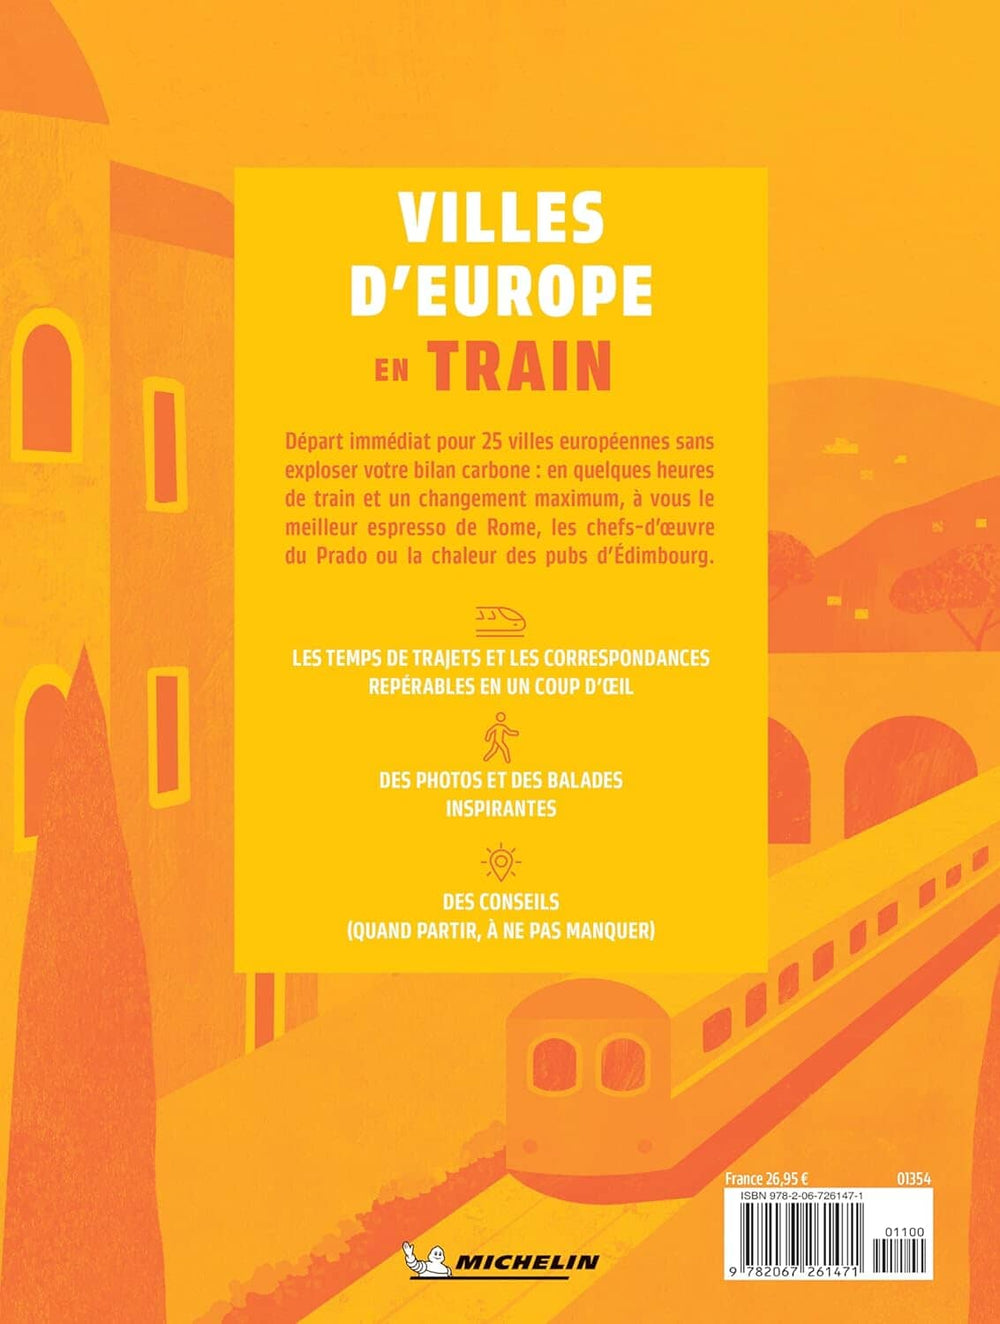 Guide de voyage - Villes d'Europe en train | Michelin guide de voyage Michelin 